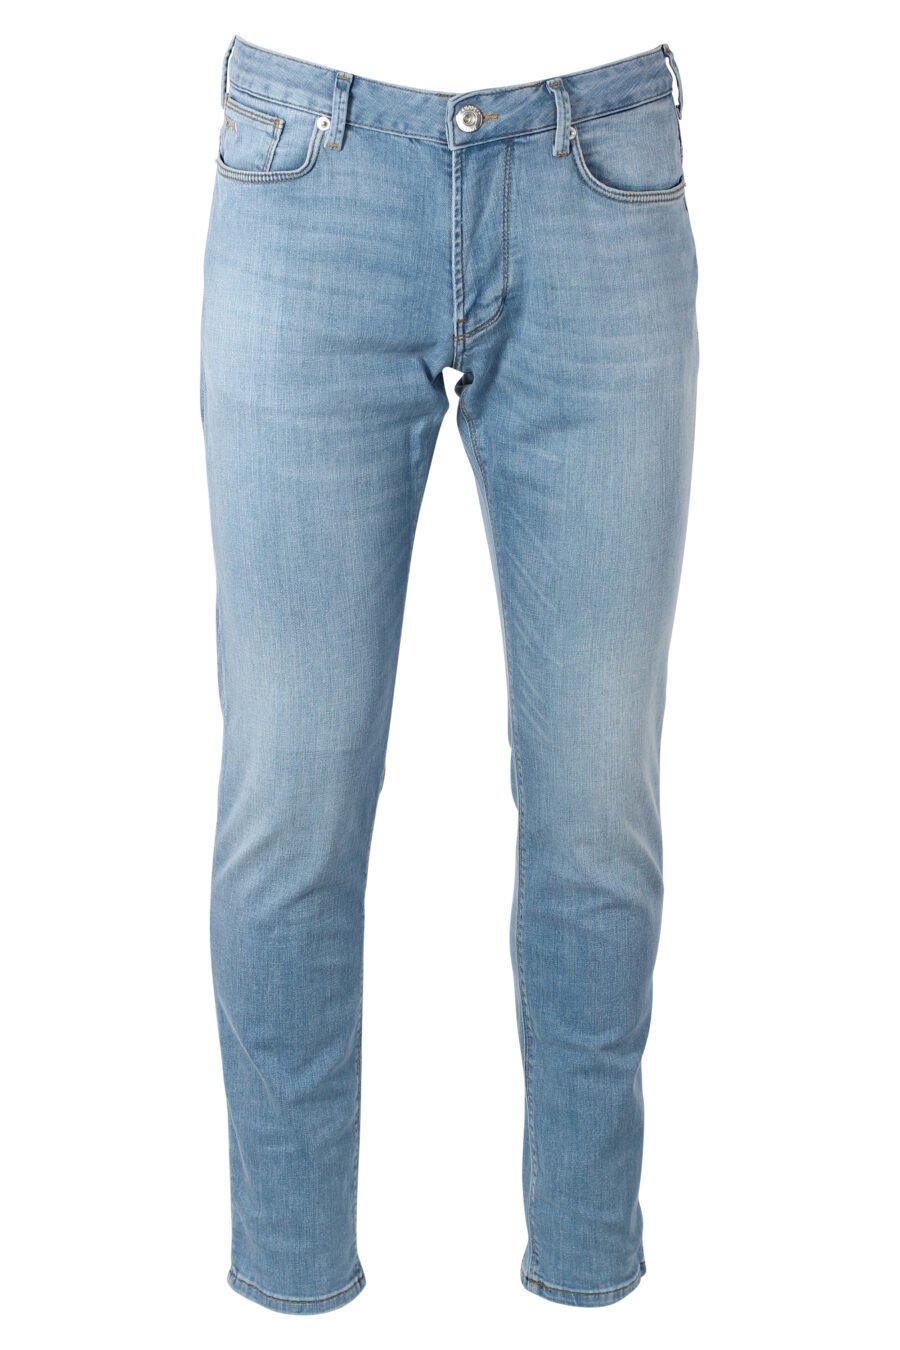 Pantalón vaquero azul claro con minilogo metal - IMG 9931